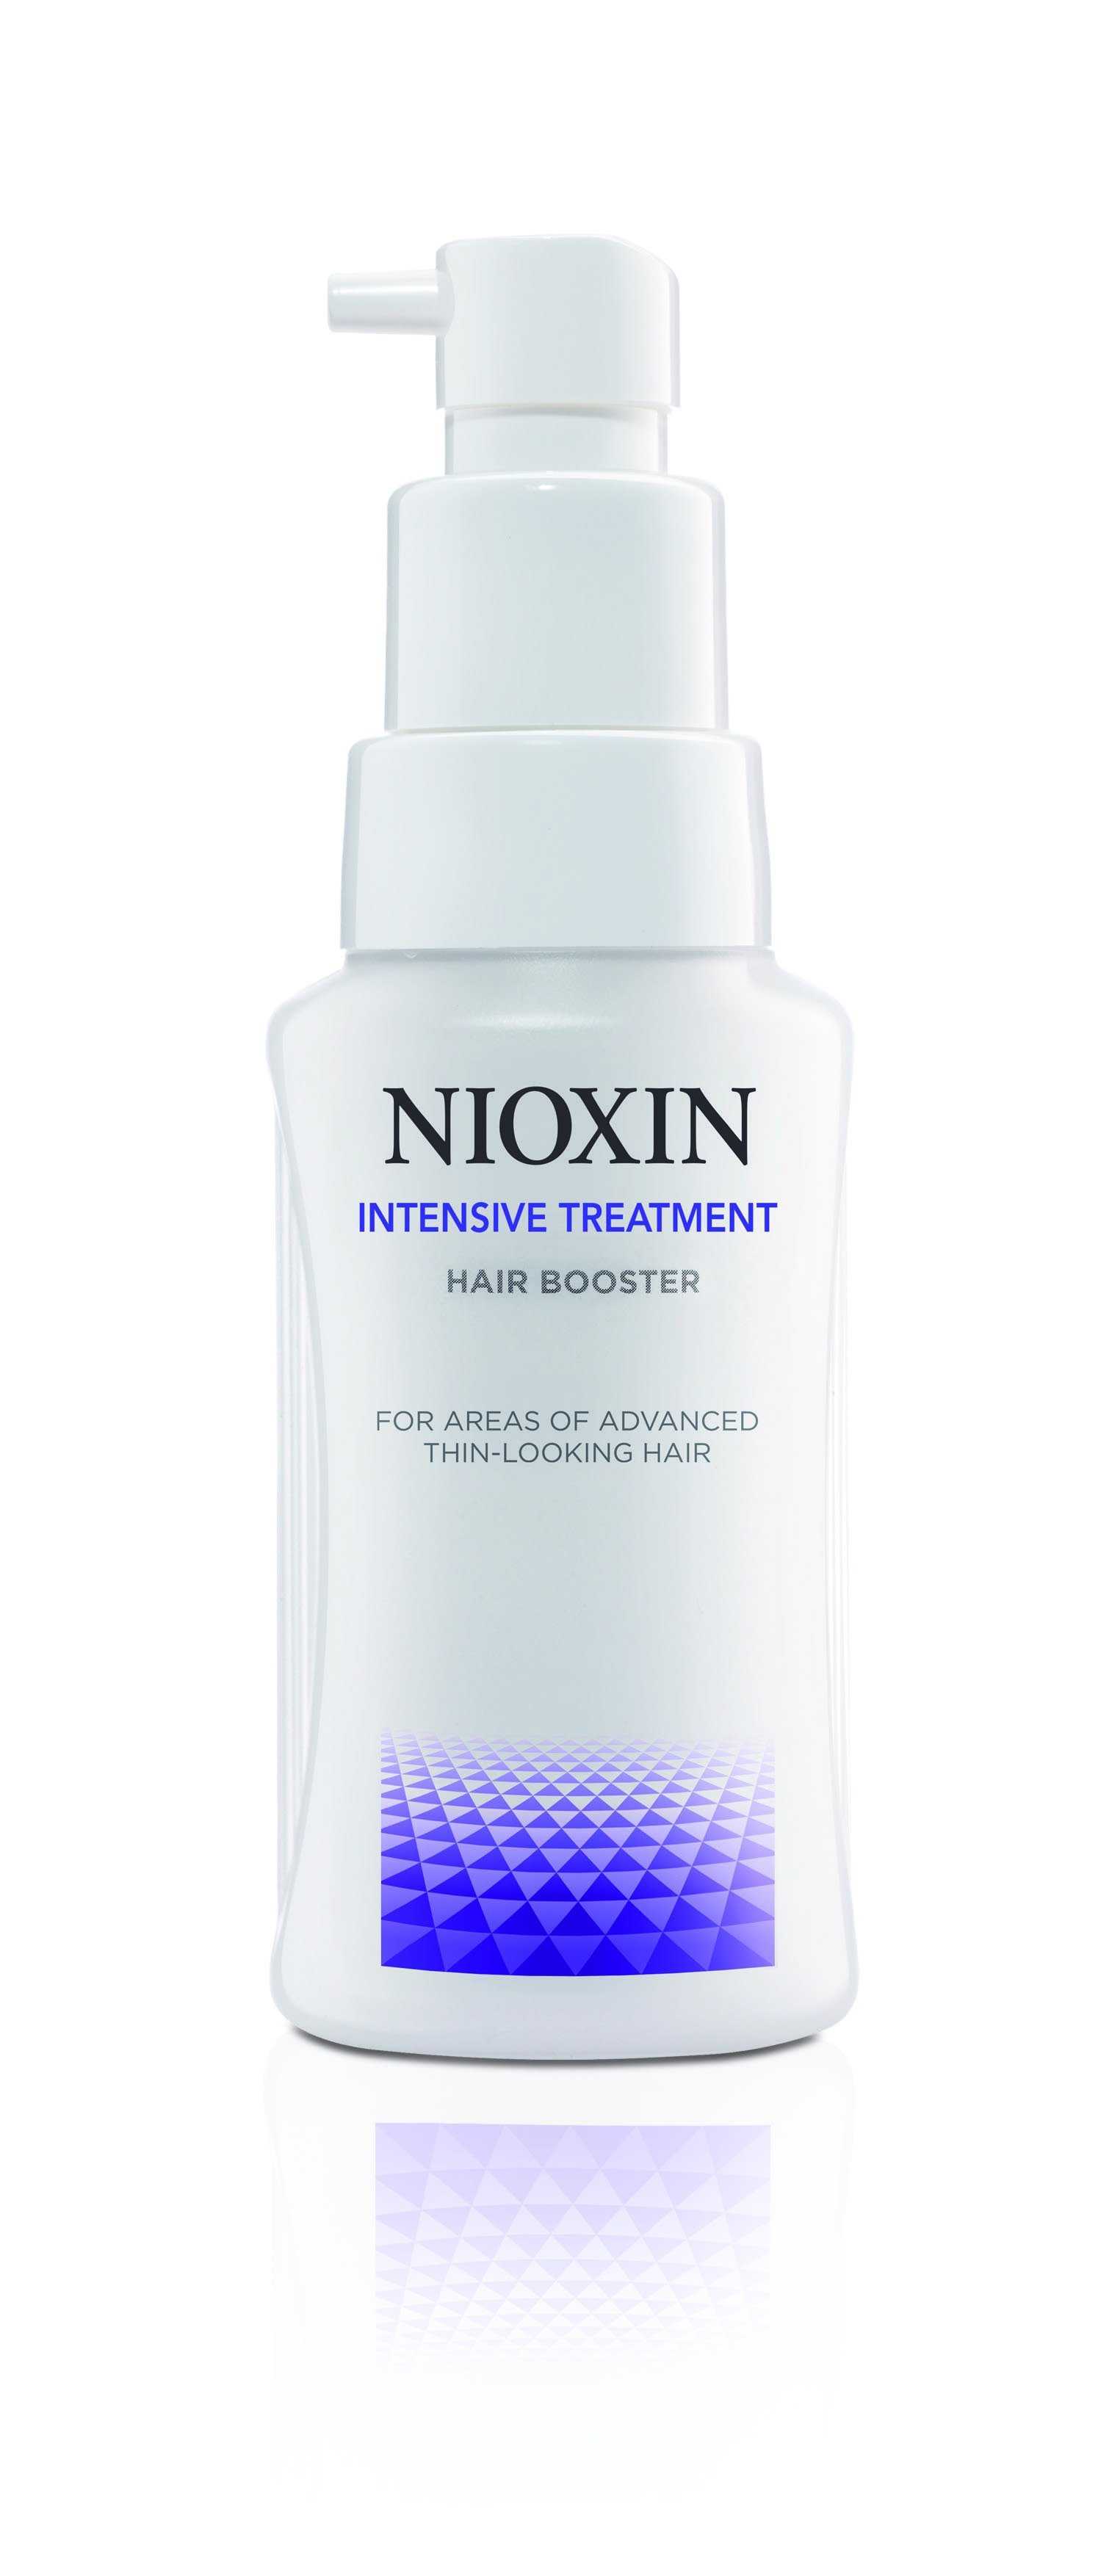 Средство для роста волос nioxin booster (ниоксин) 100 мл – отзывы с фото до и после, состав и принцип действия, показания и противопоказания